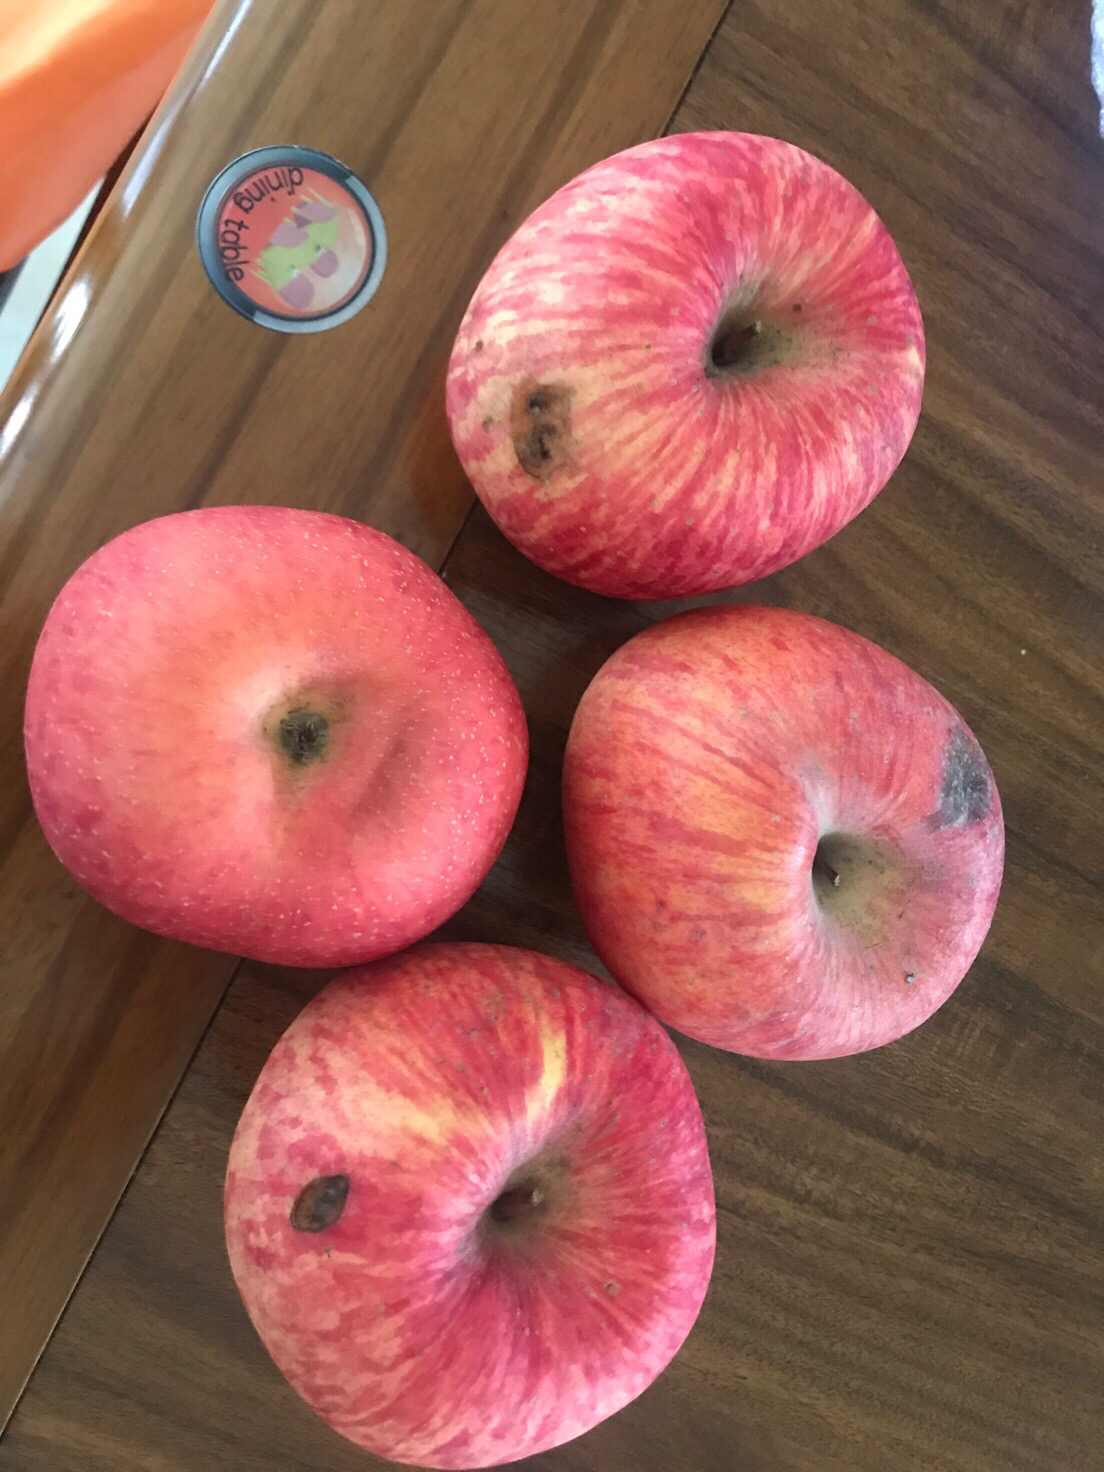 洛川苹果 陕西洛川红富士新鲜苹果水果 20枚85 国产水果延安苹果晒单图